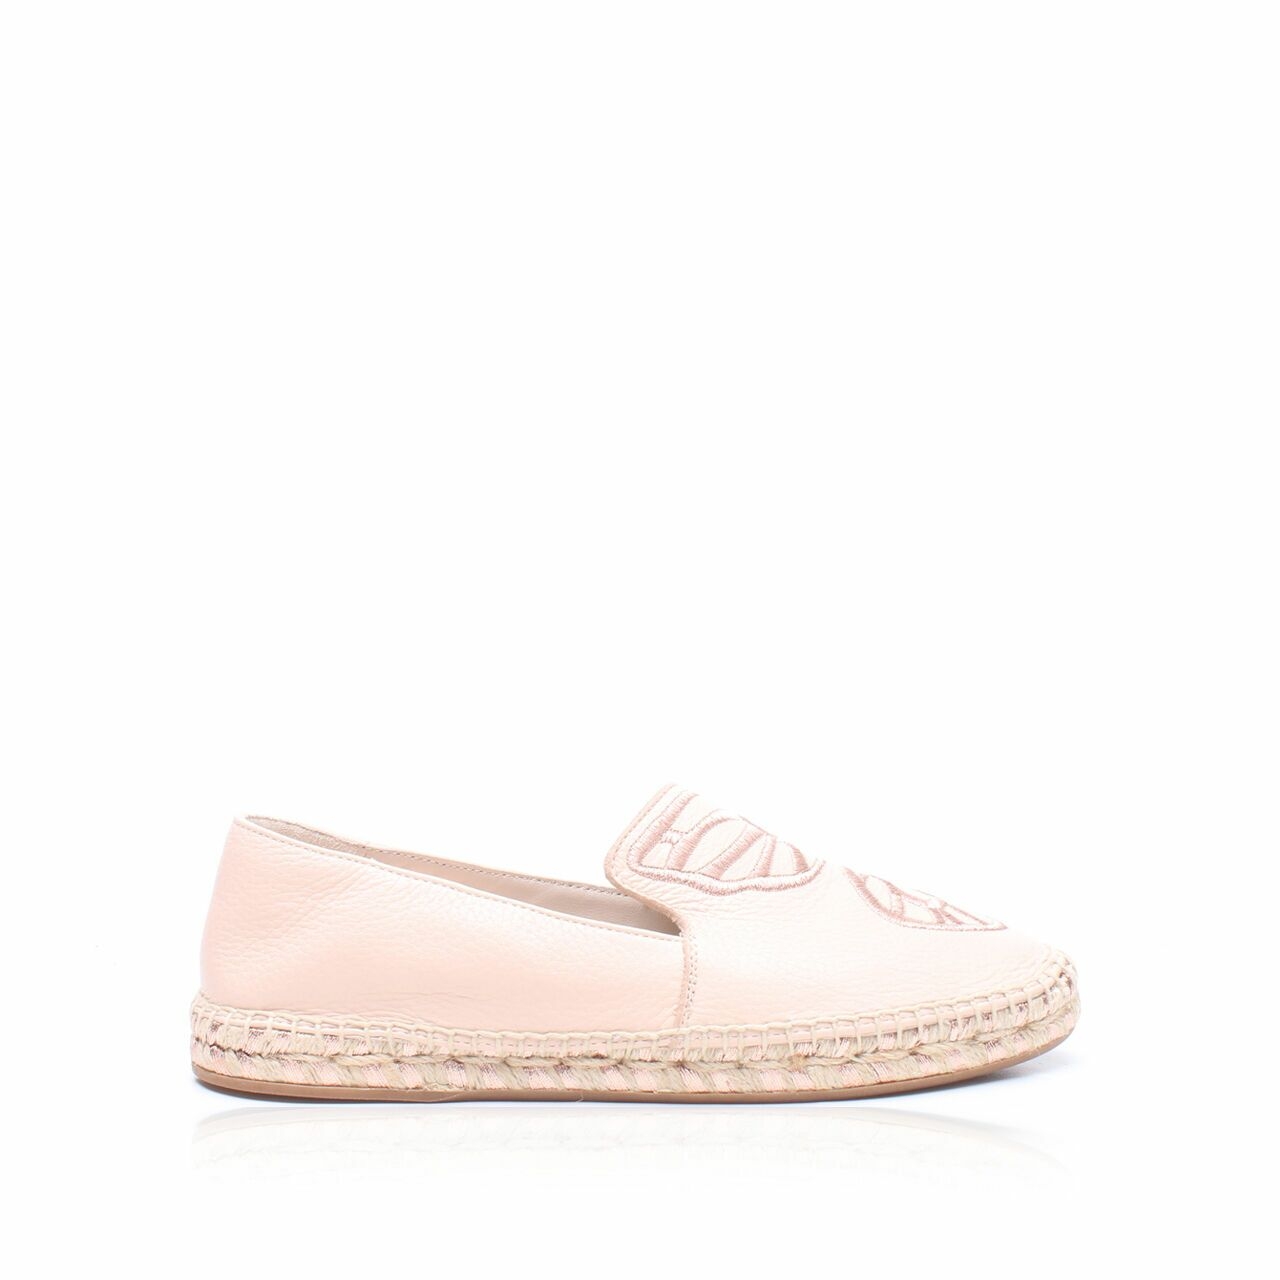 Sophia Webster Pink Flats Shoes